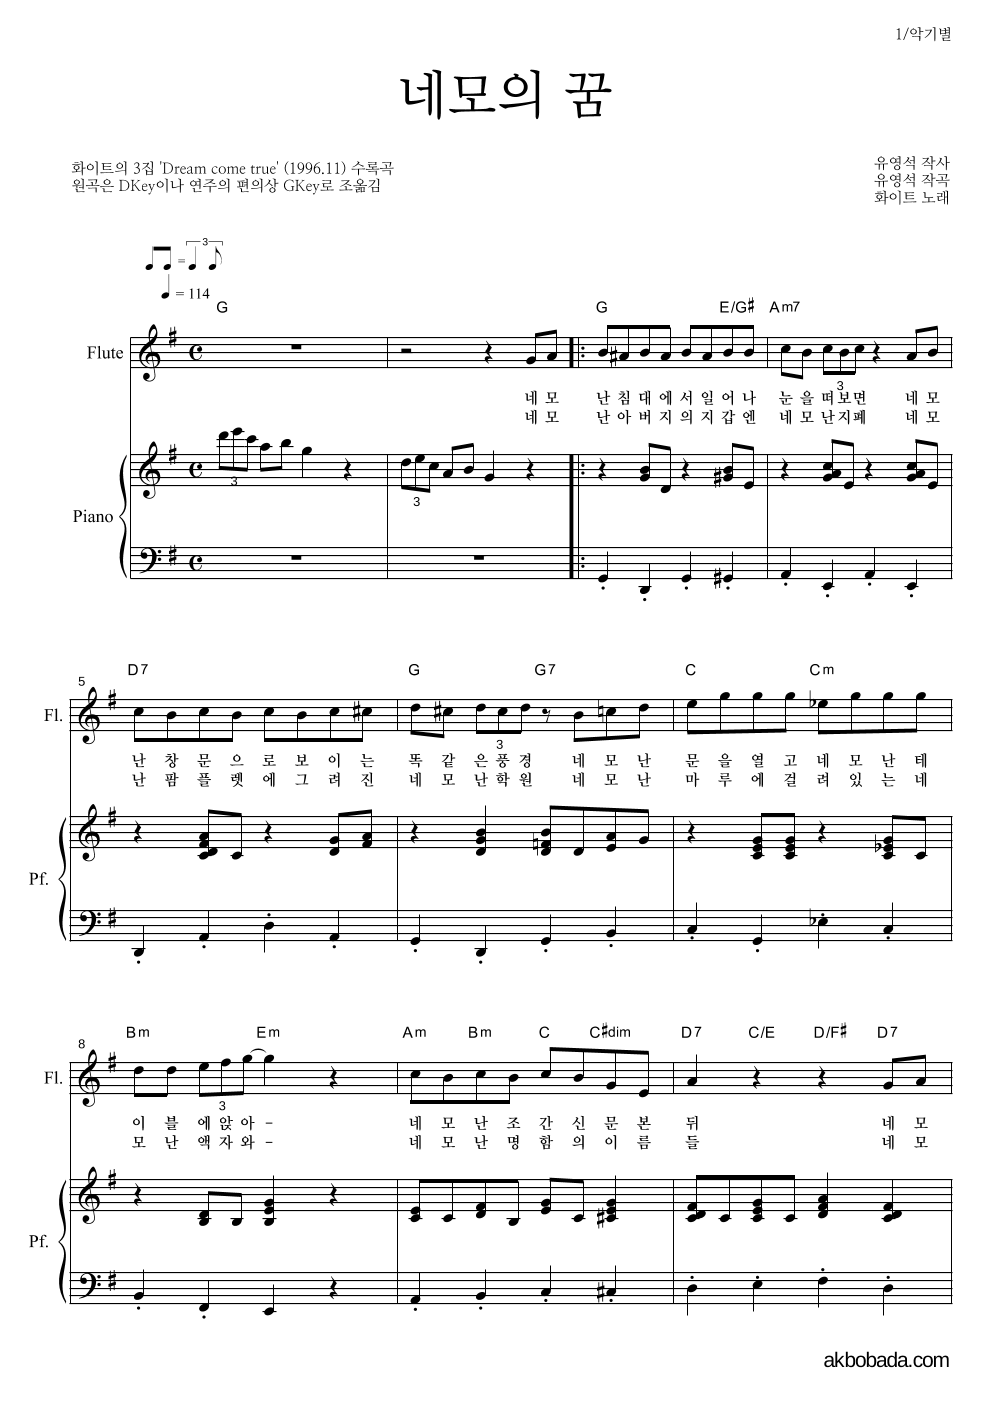 화이트 - 네모의 꿈 플룻&피아노 악보 